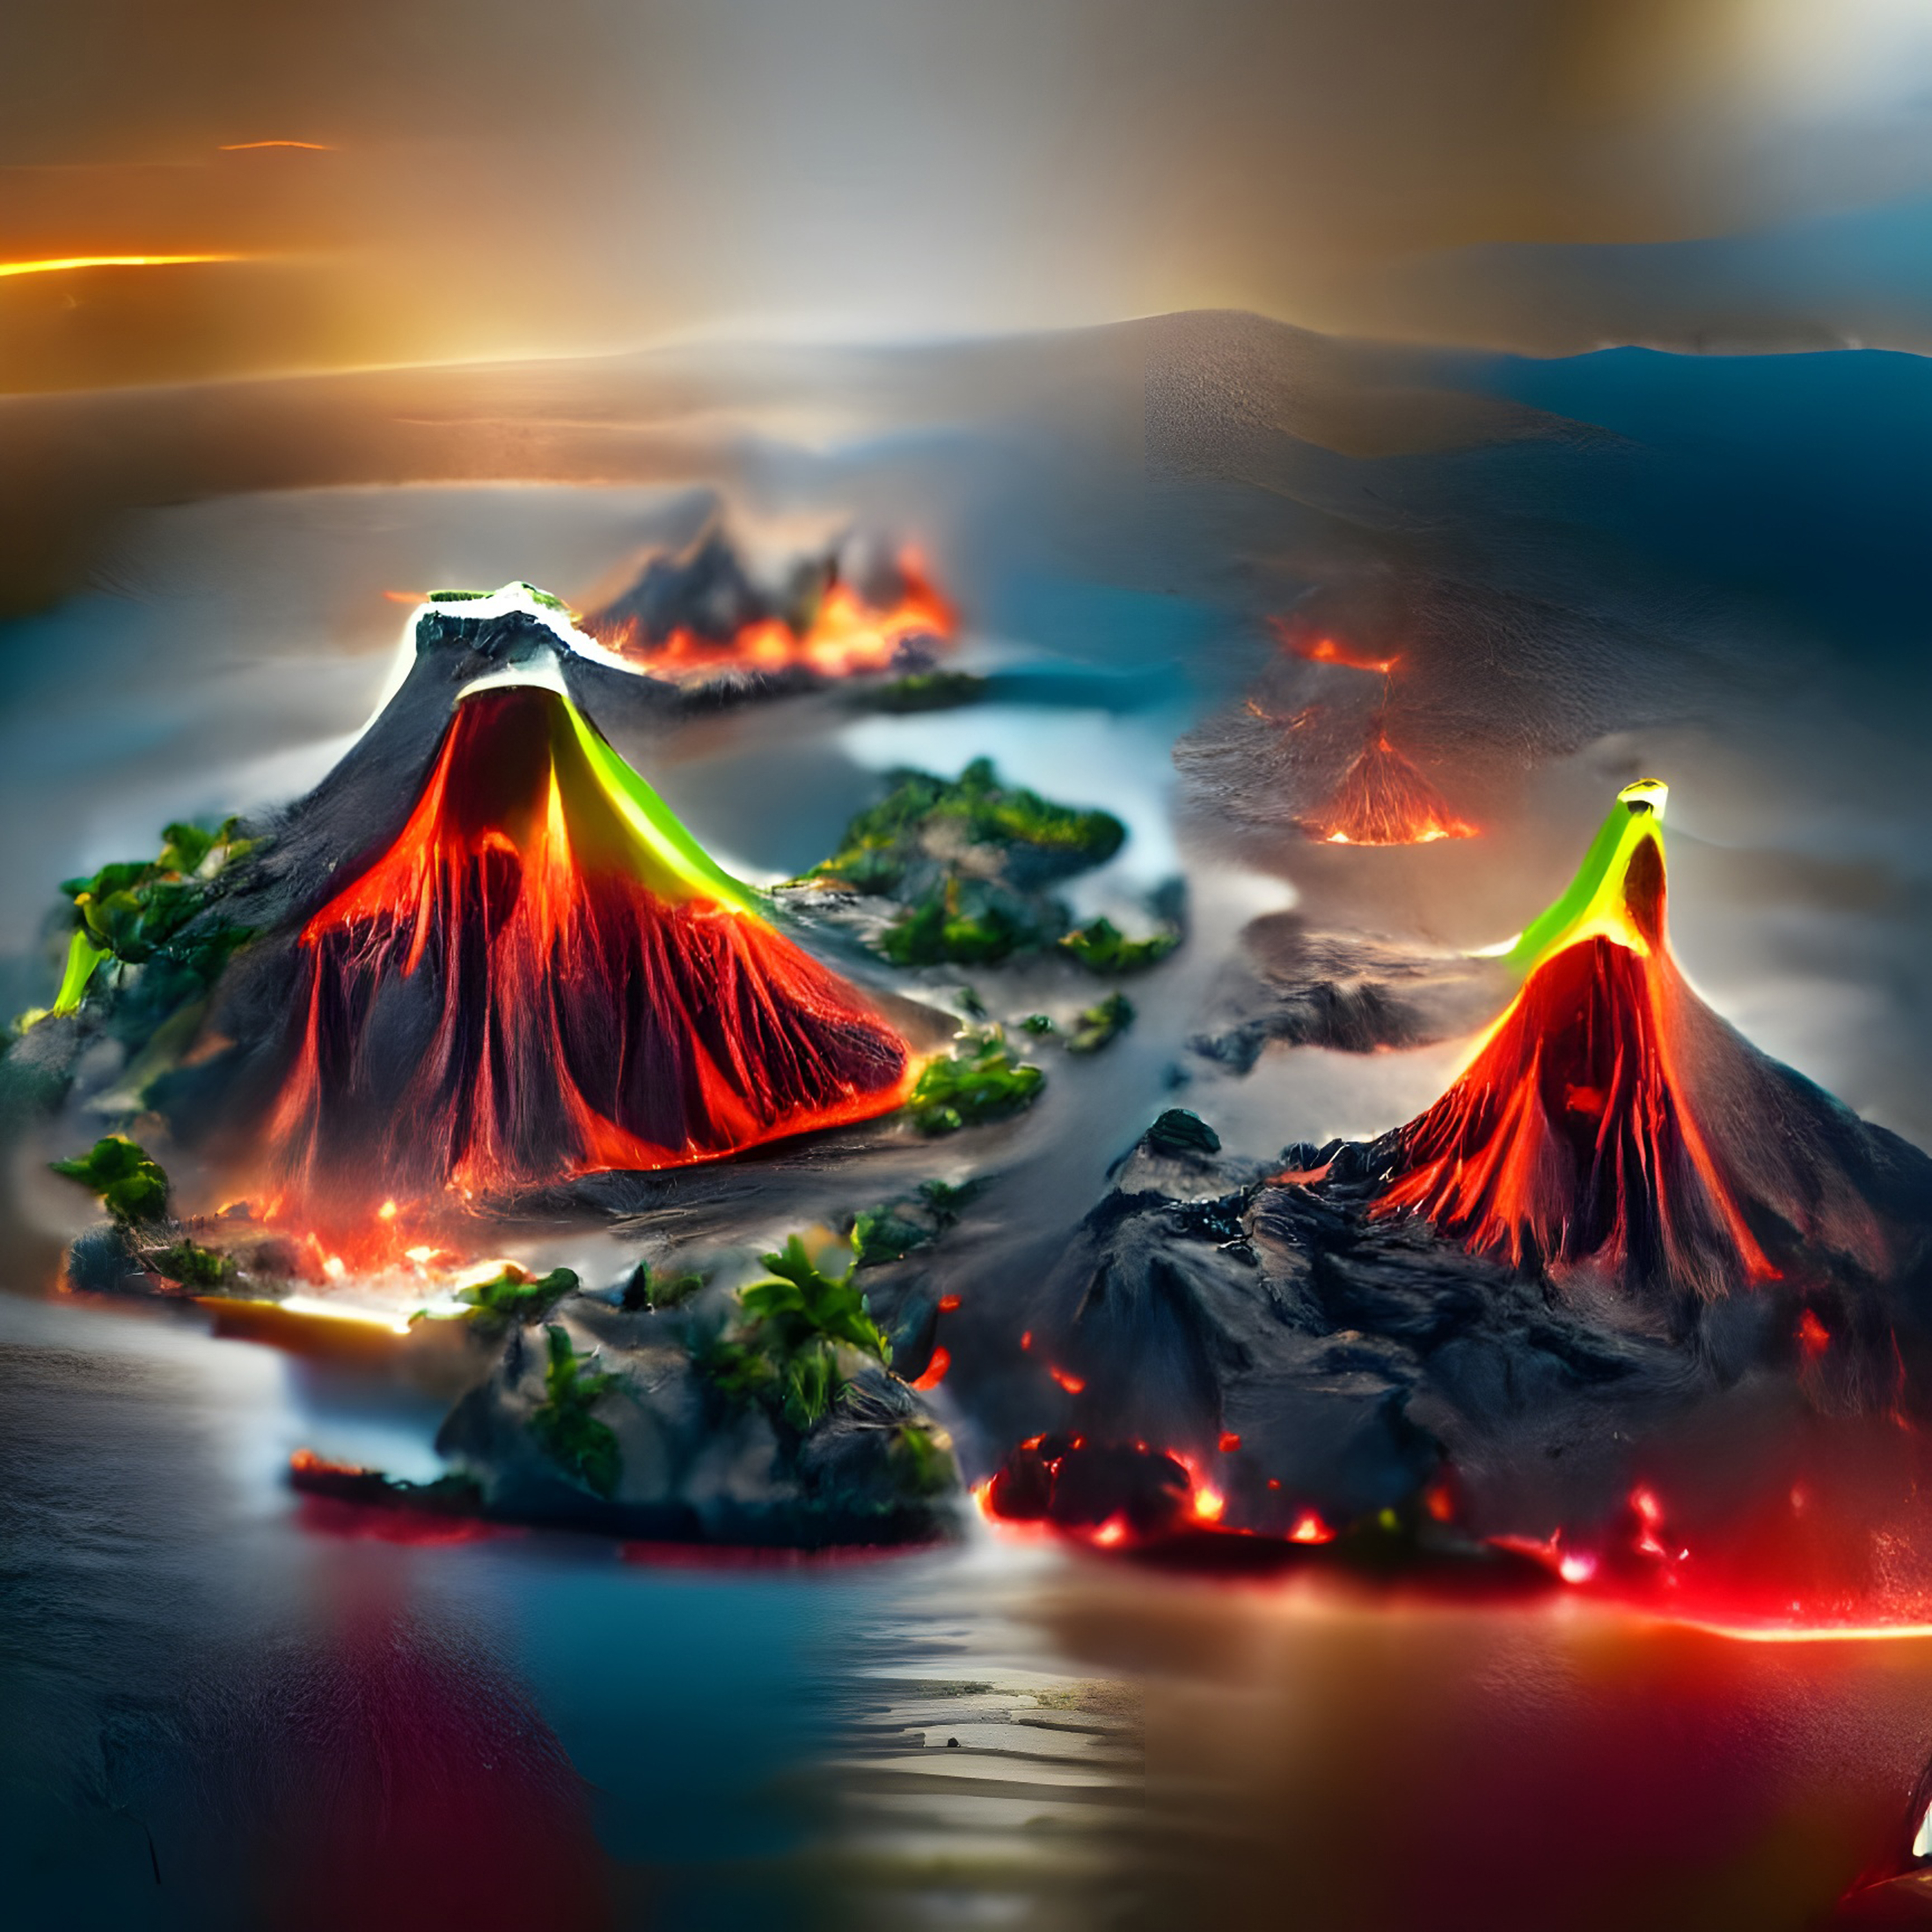 Volcano Islands